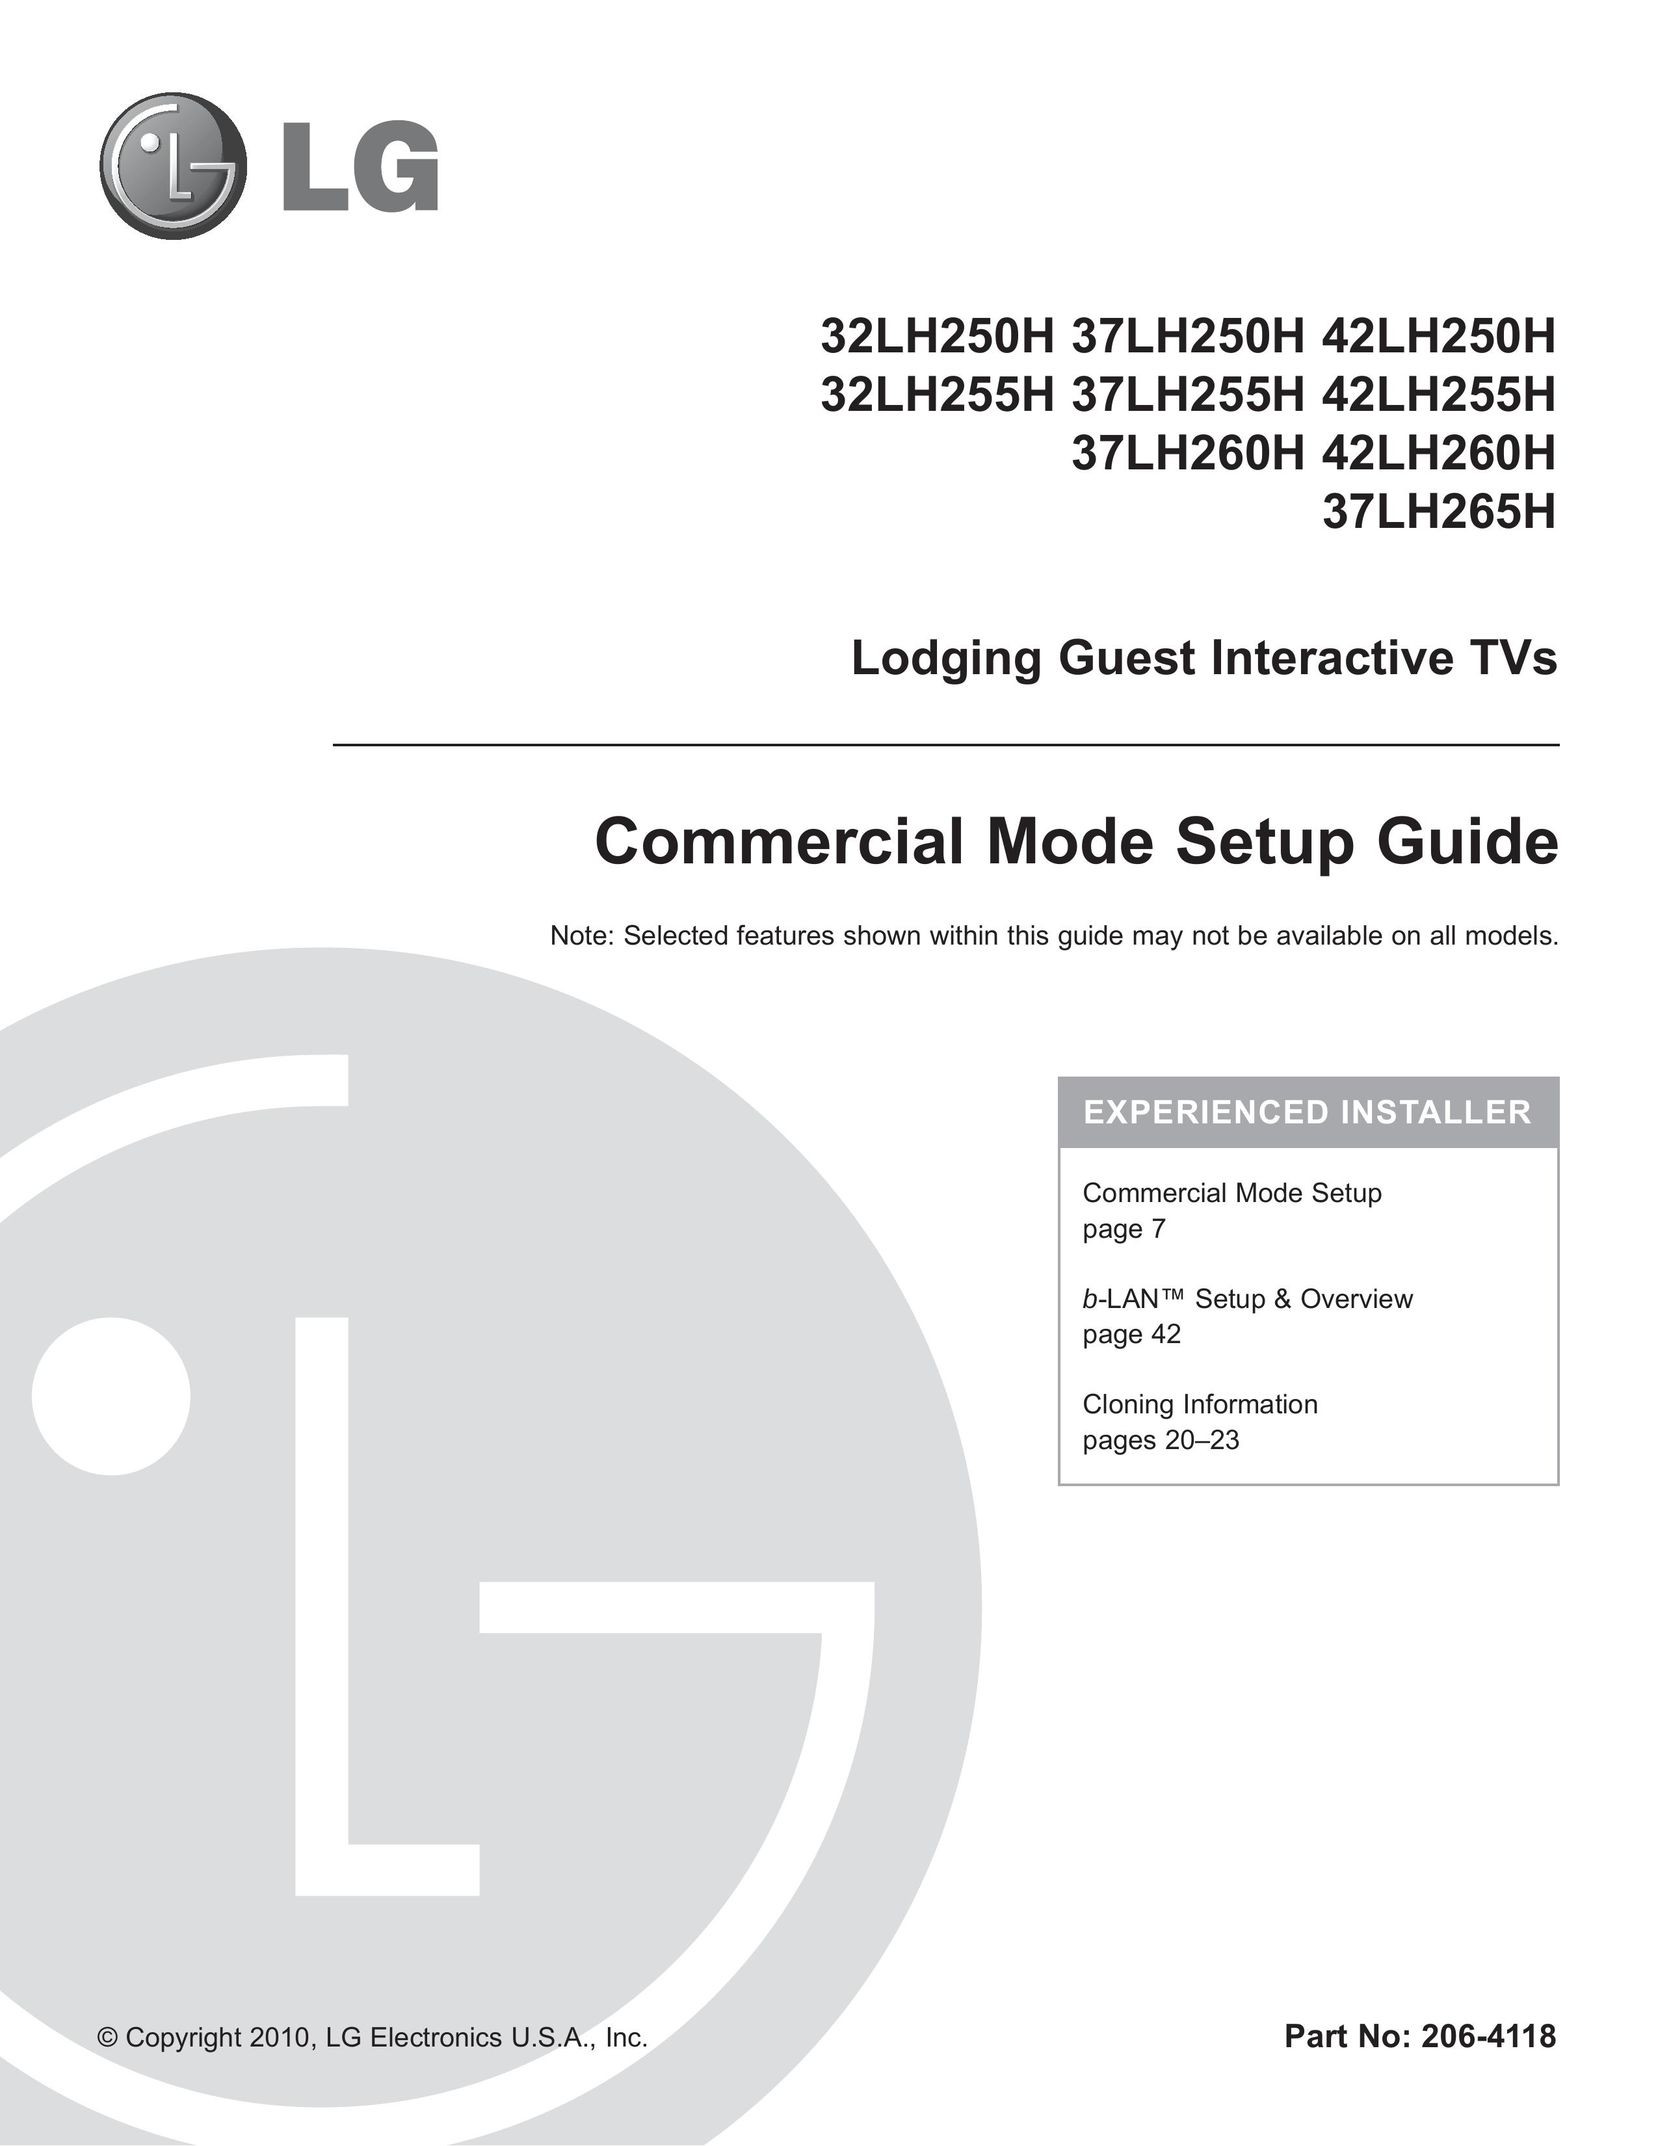 LG Electronics 32LH250H Car Satellite TV System User Manual